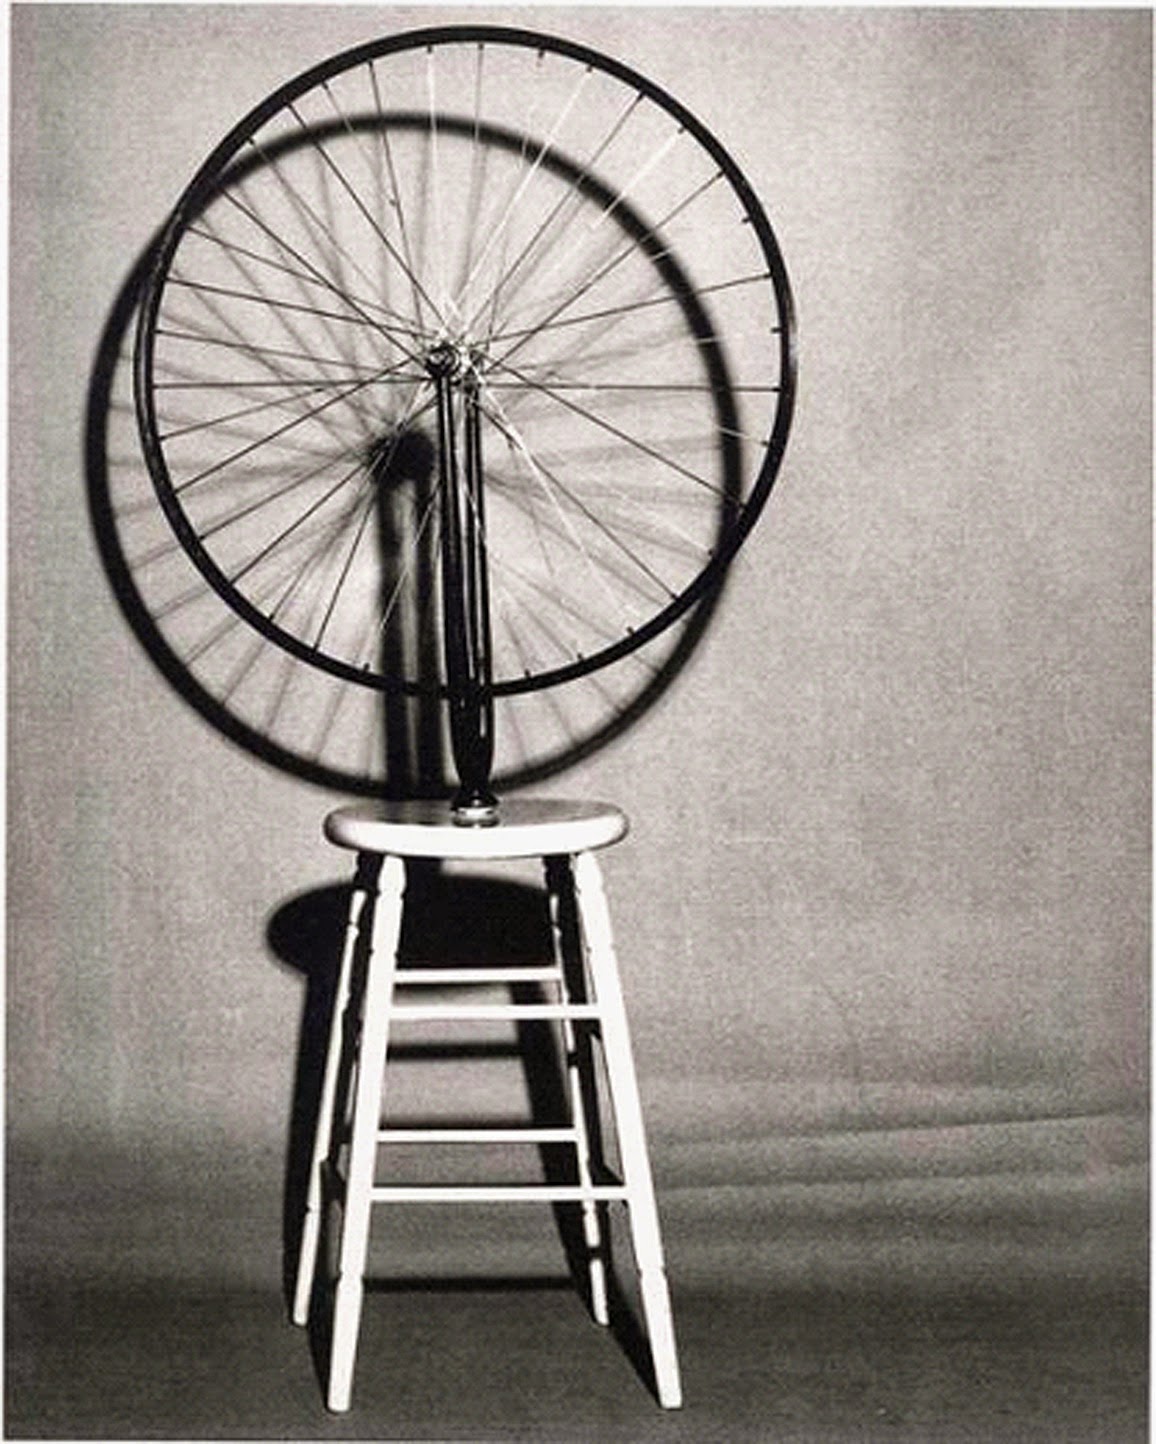 roue sur bicyclette duchamp